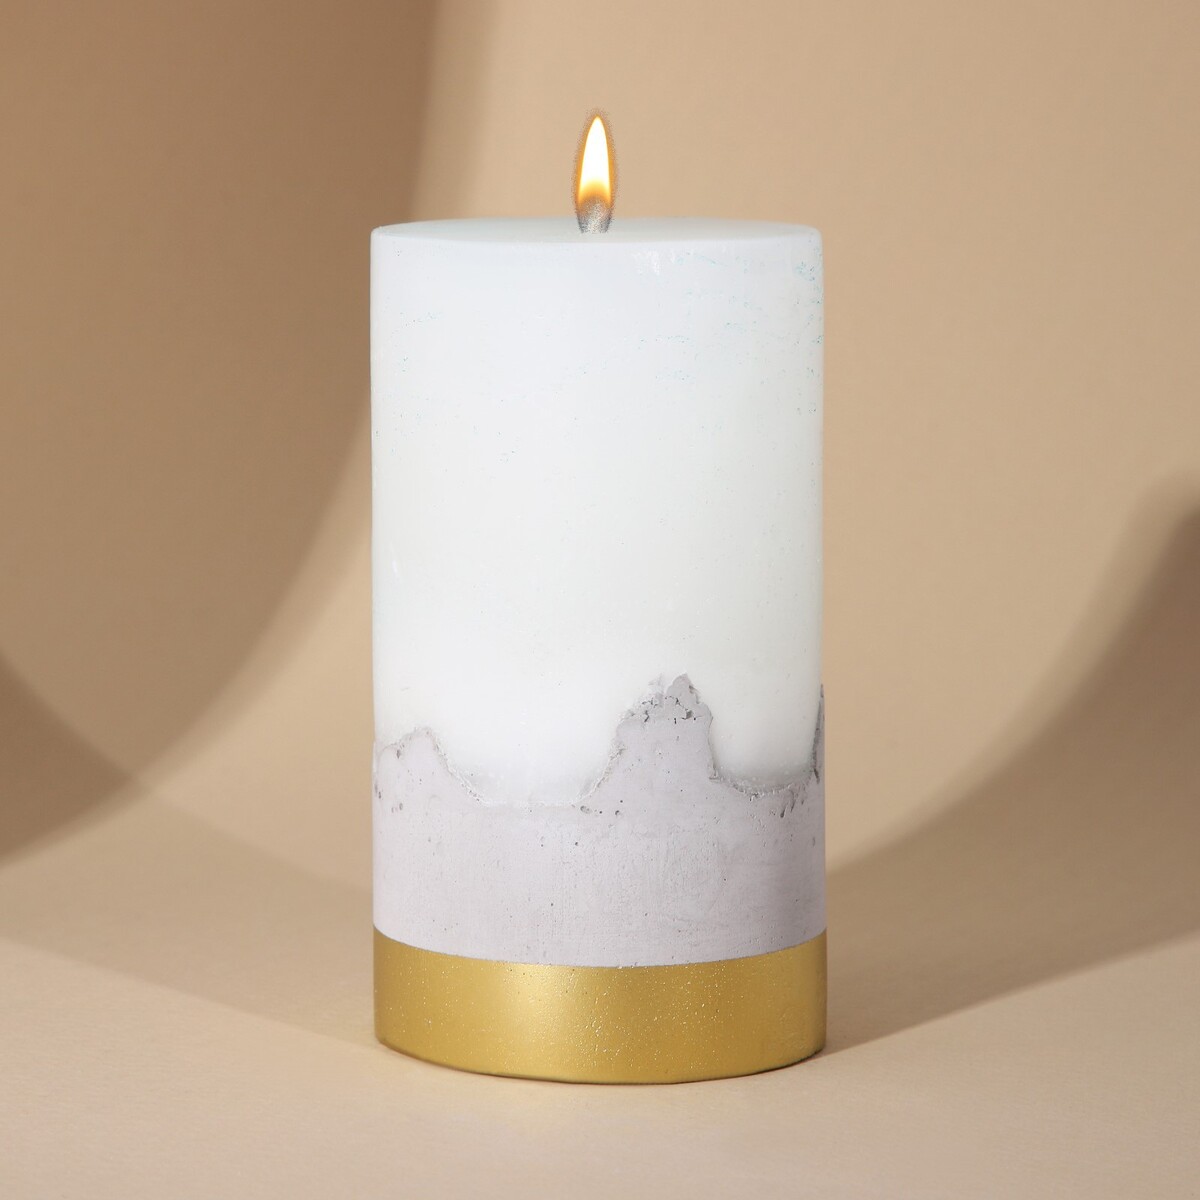 Свеча интерьерная белая с бетоном, низ золото, 13 х 7 см свеча античная 2 2х26 см пальмовый воск белая 2 ч